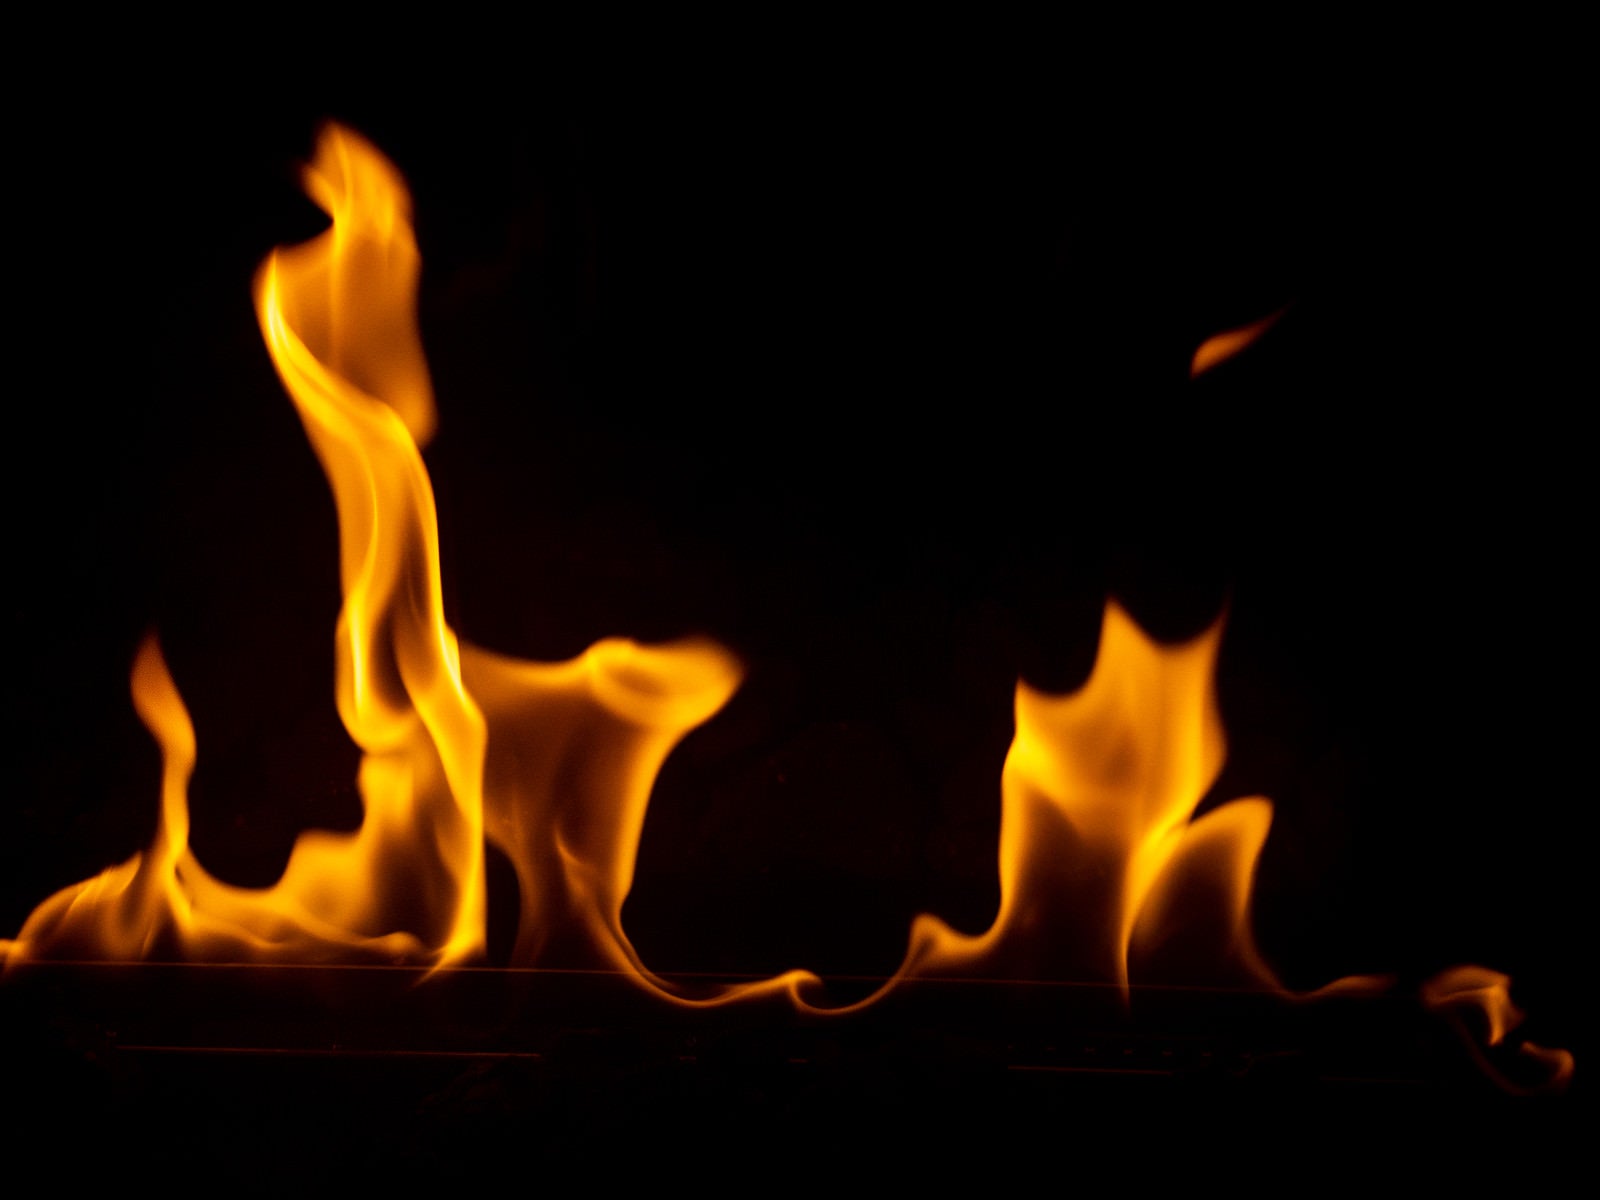 「火が燃えてゴゴゴ」の写真